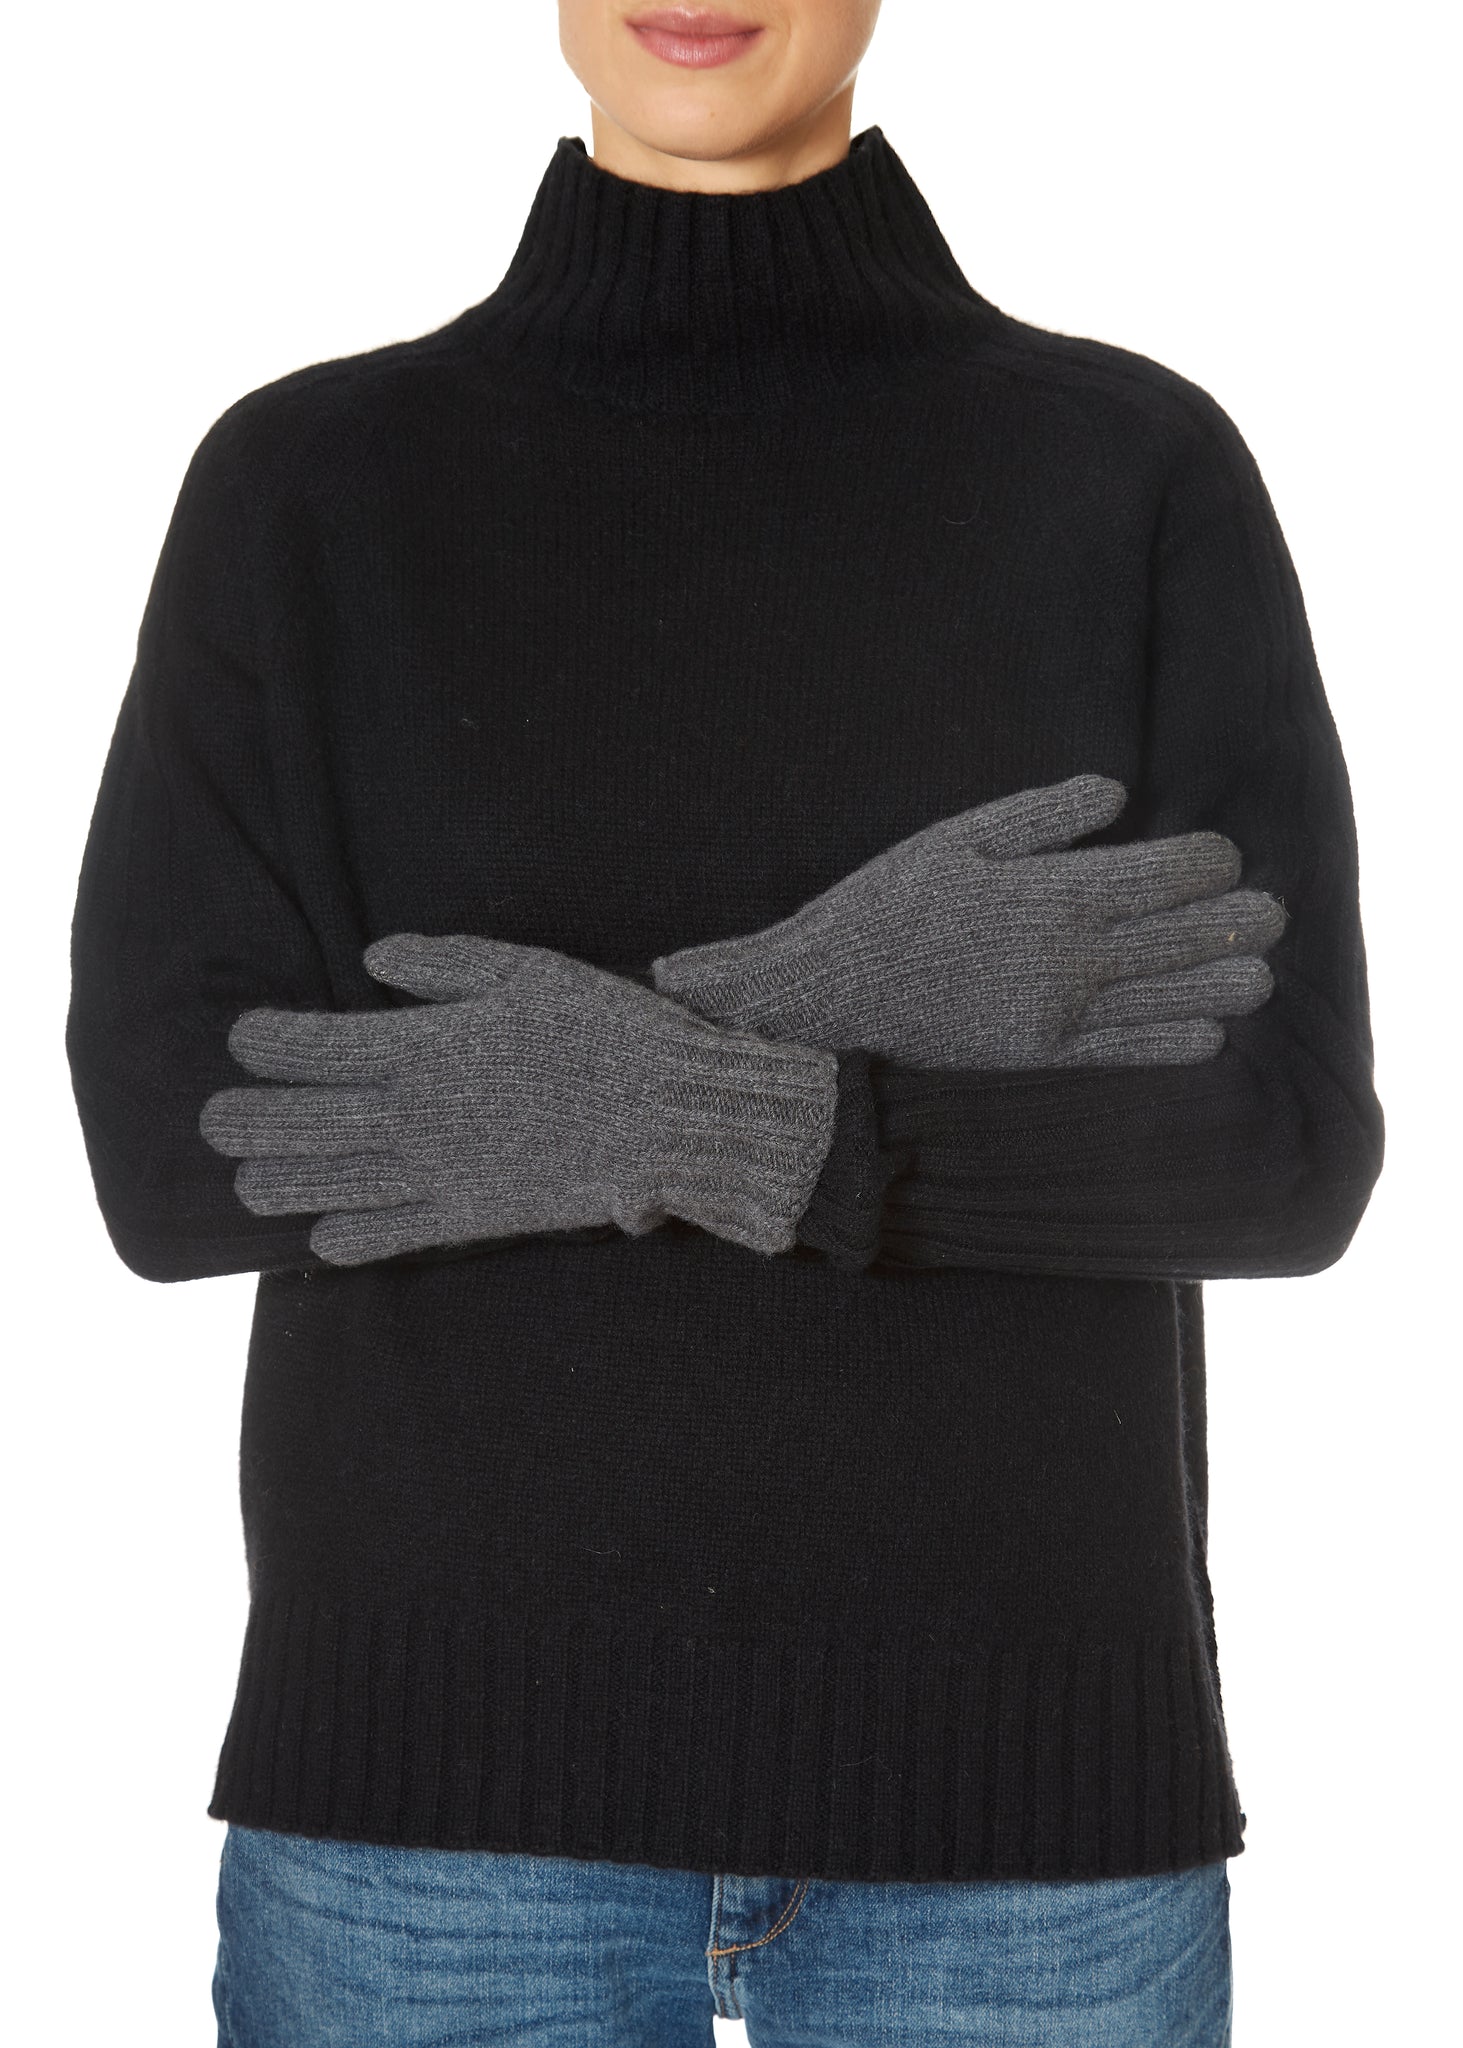 Santacana Dark Grey Gloves 'Cashmere Blend' - Jessimara